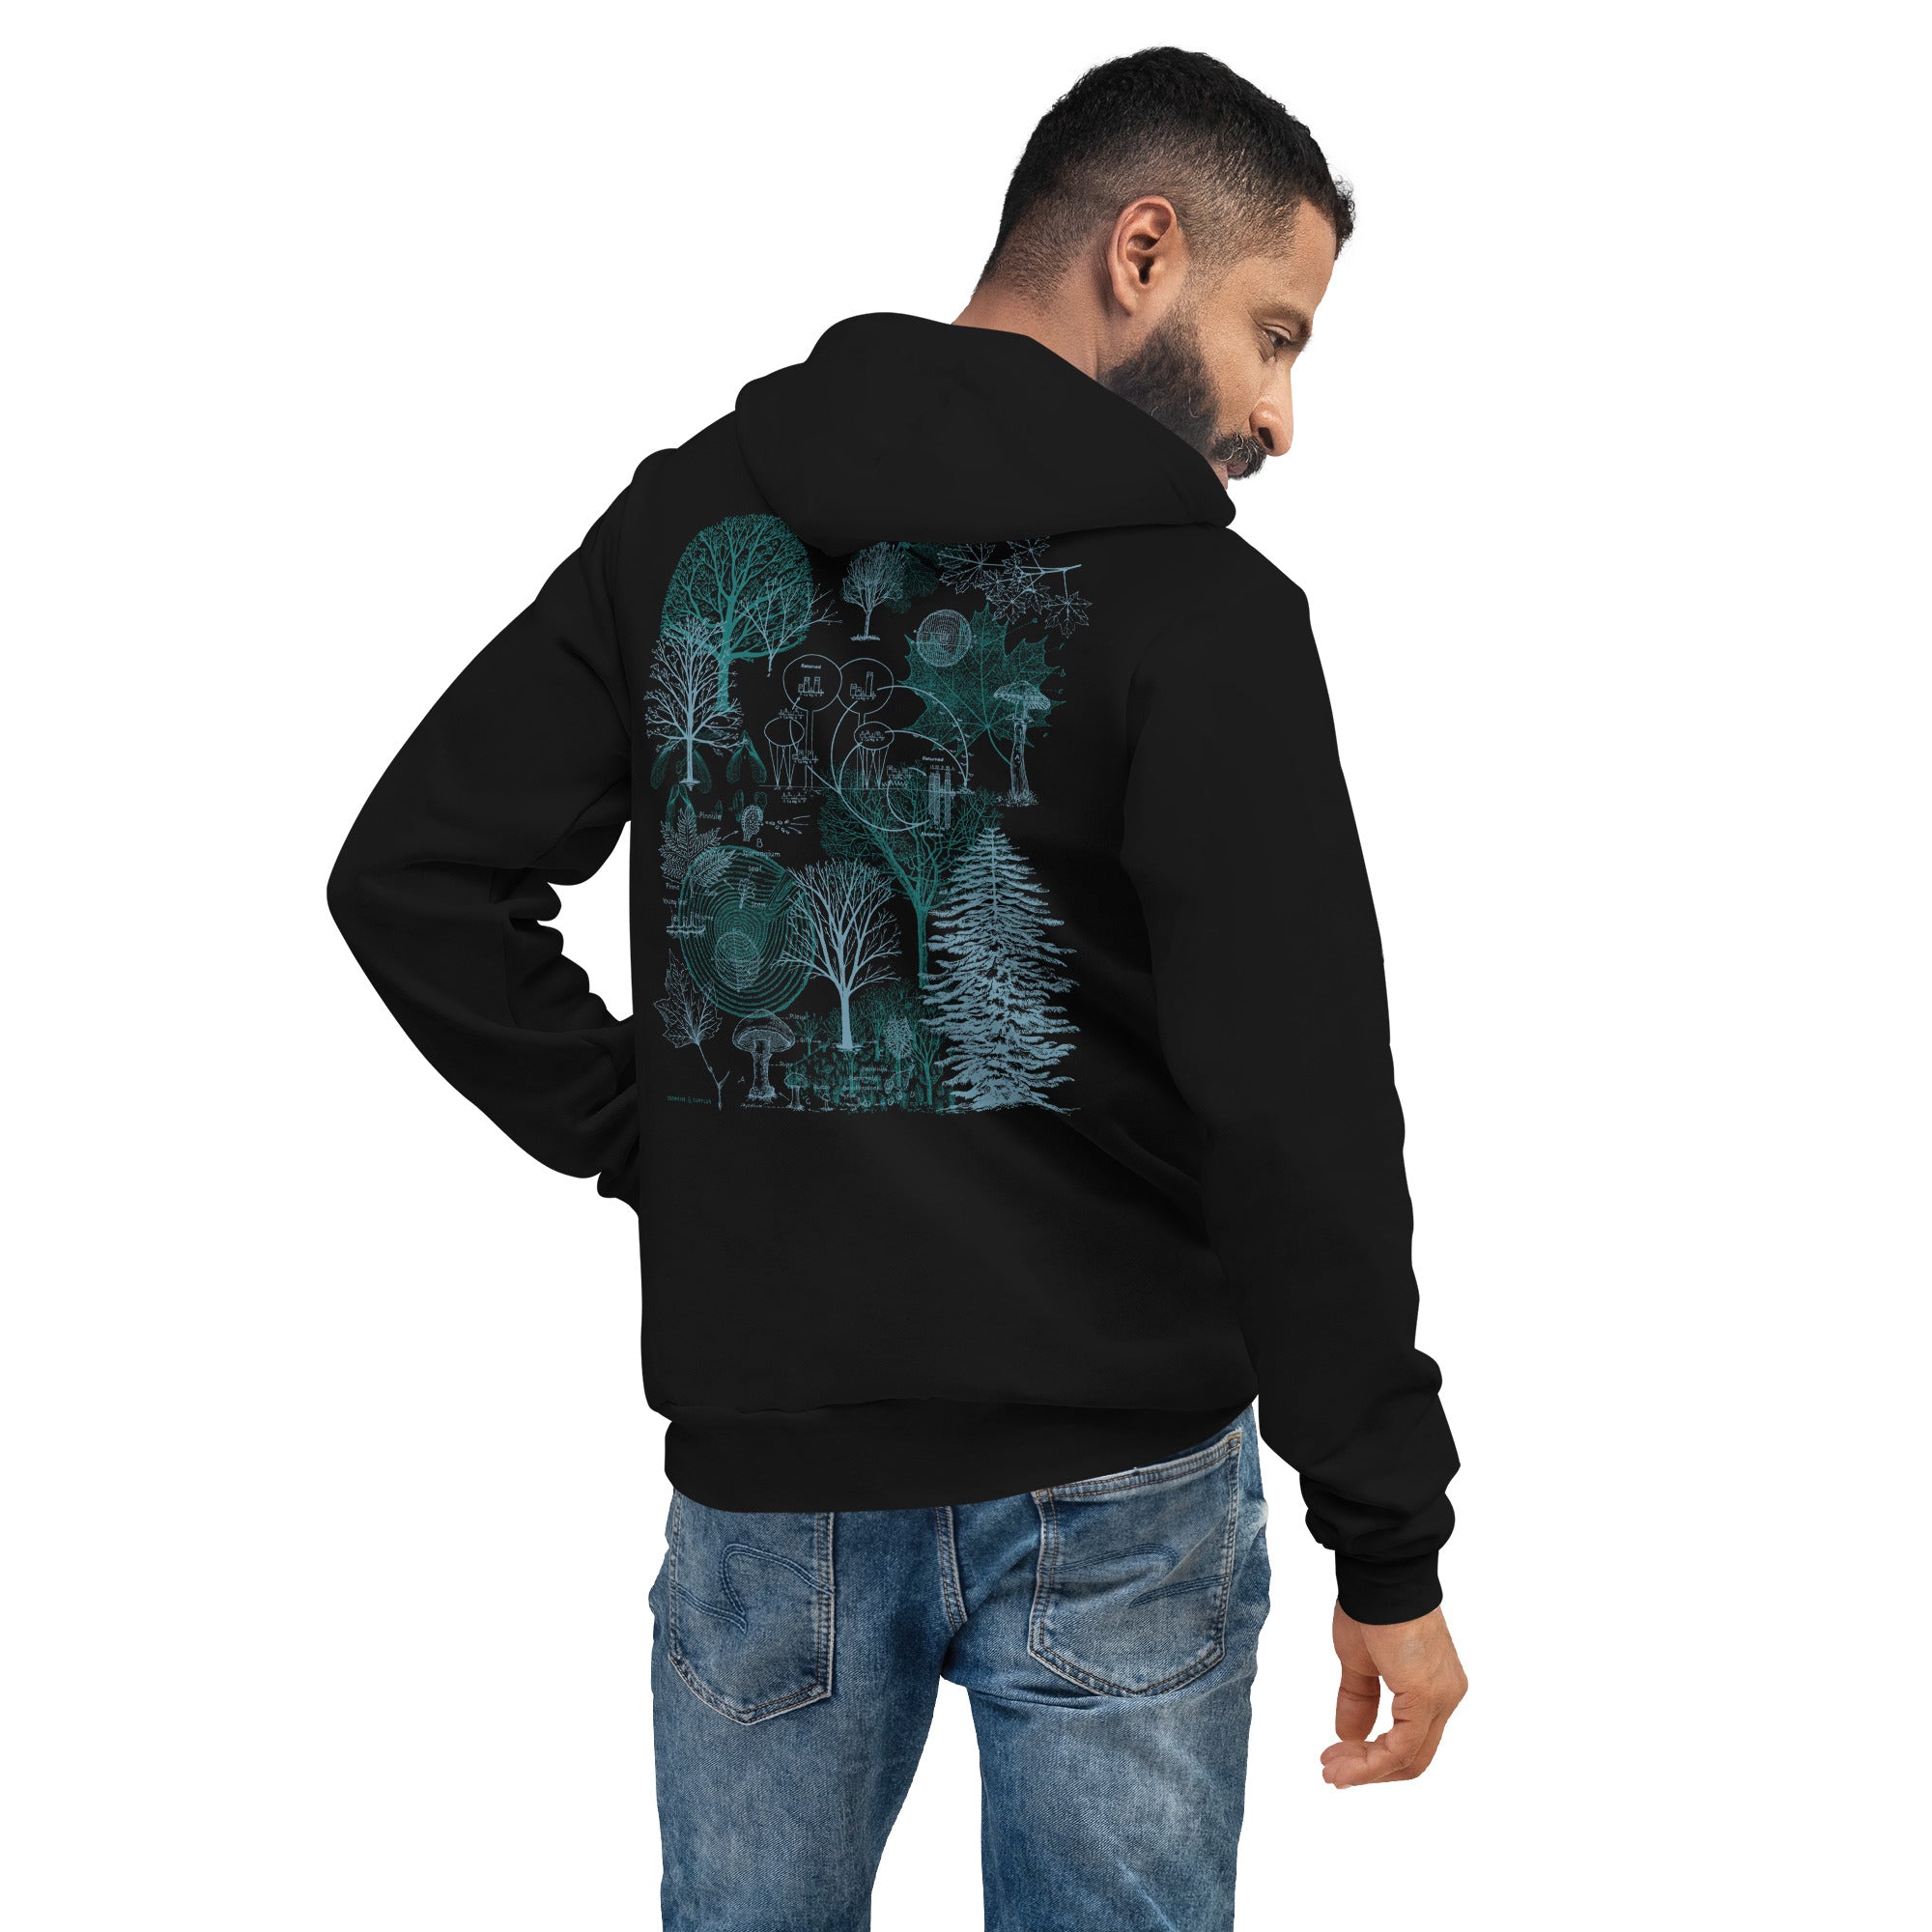 unisex-pullover-hoodie-black-back-656e71f24e7e9.jpg